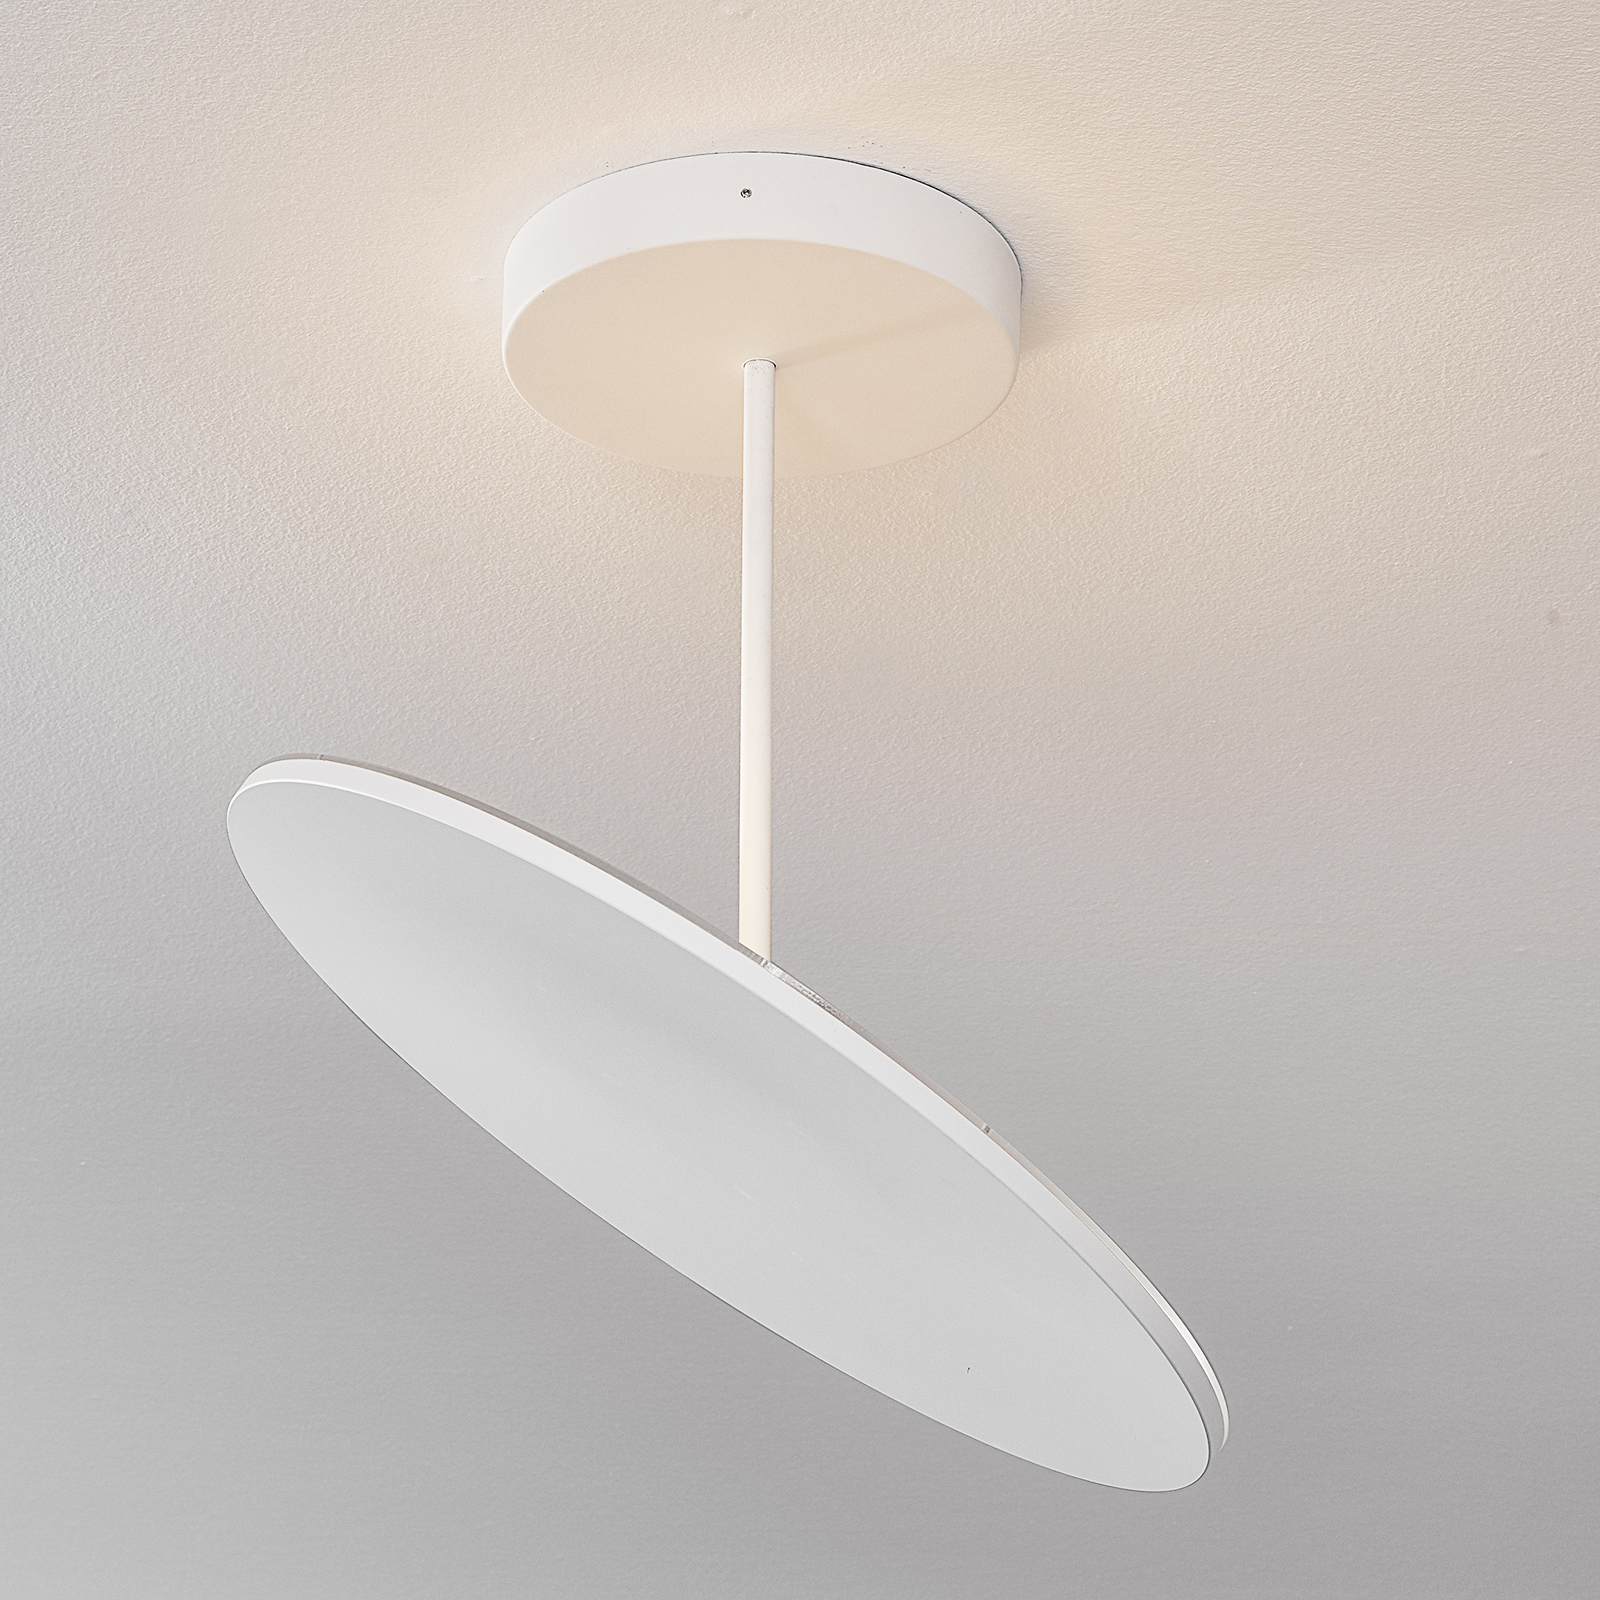 Holtkötter Plano XL LED-Deckenlampe struktur weiß